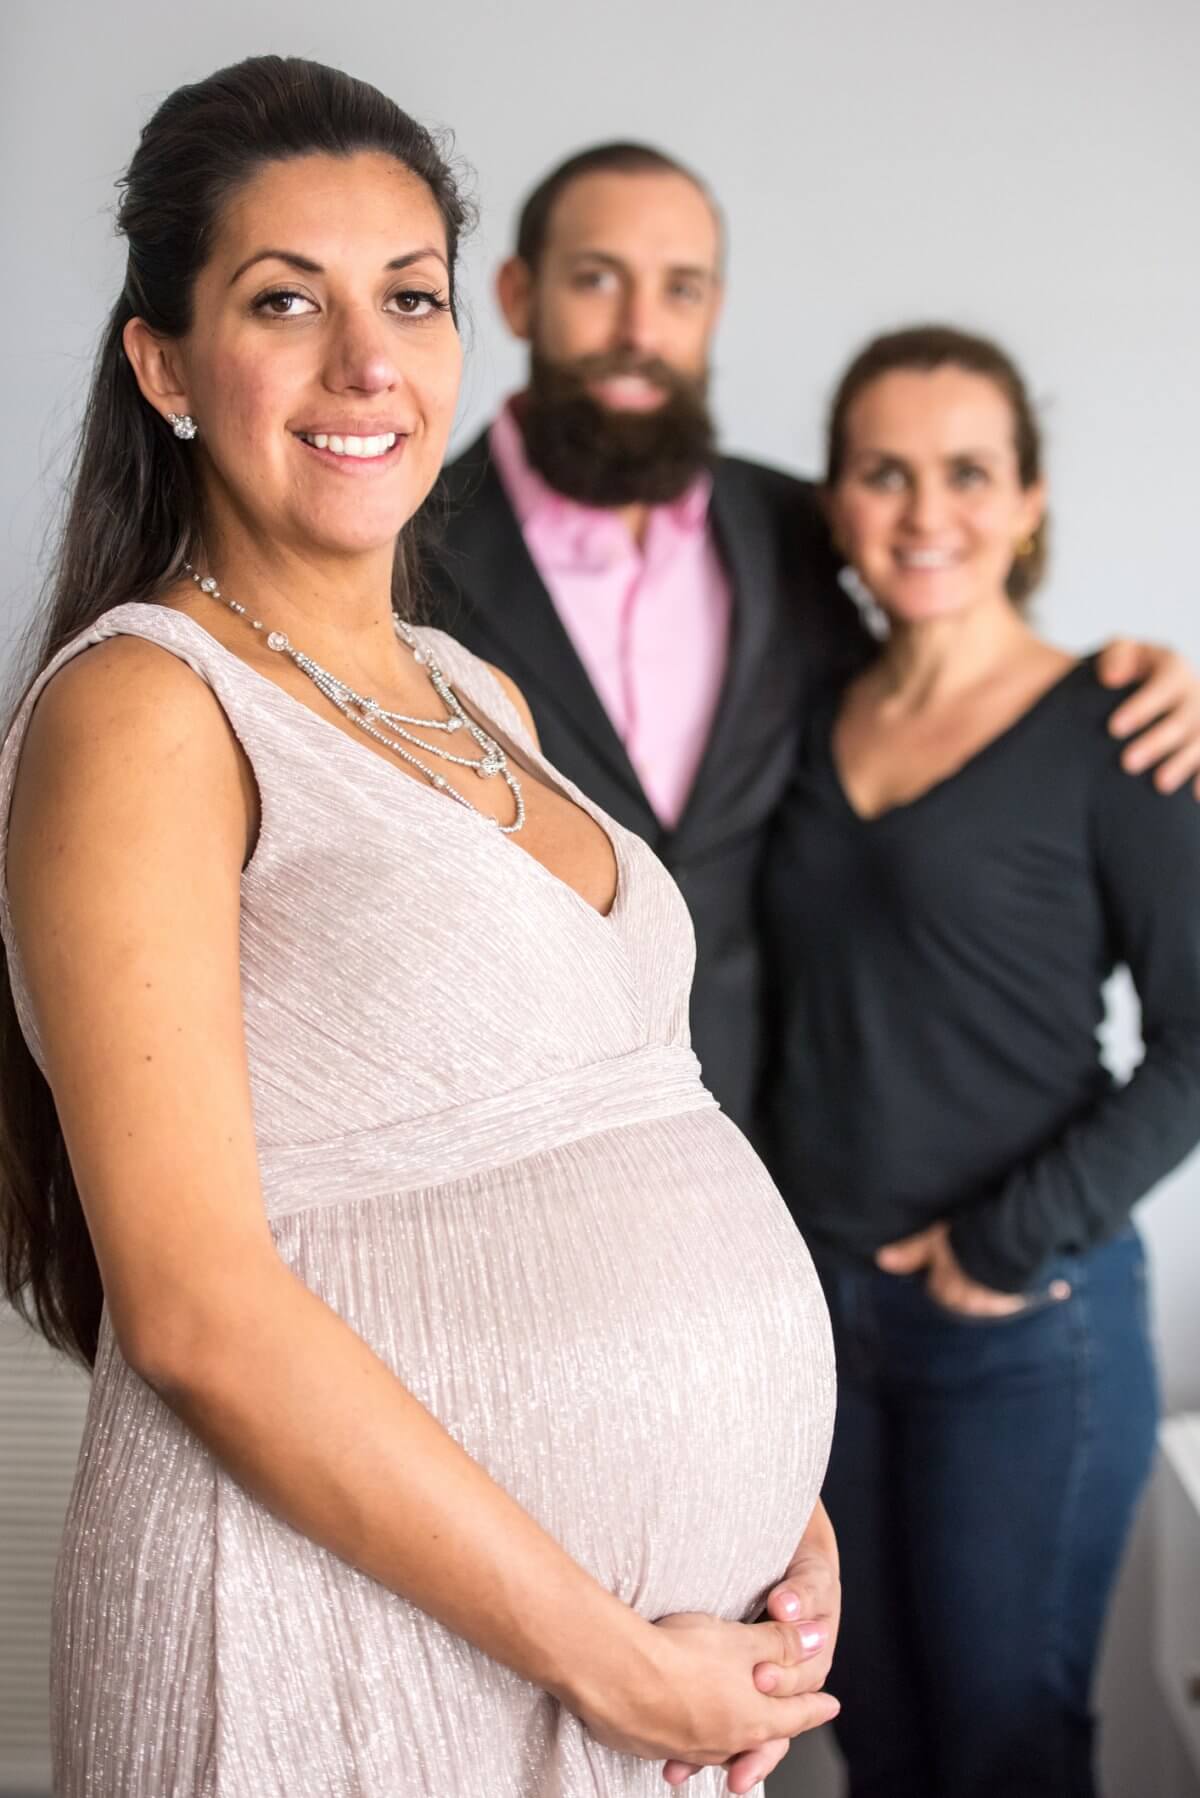 How Do Surrogacy Agencies Find Surrogates?